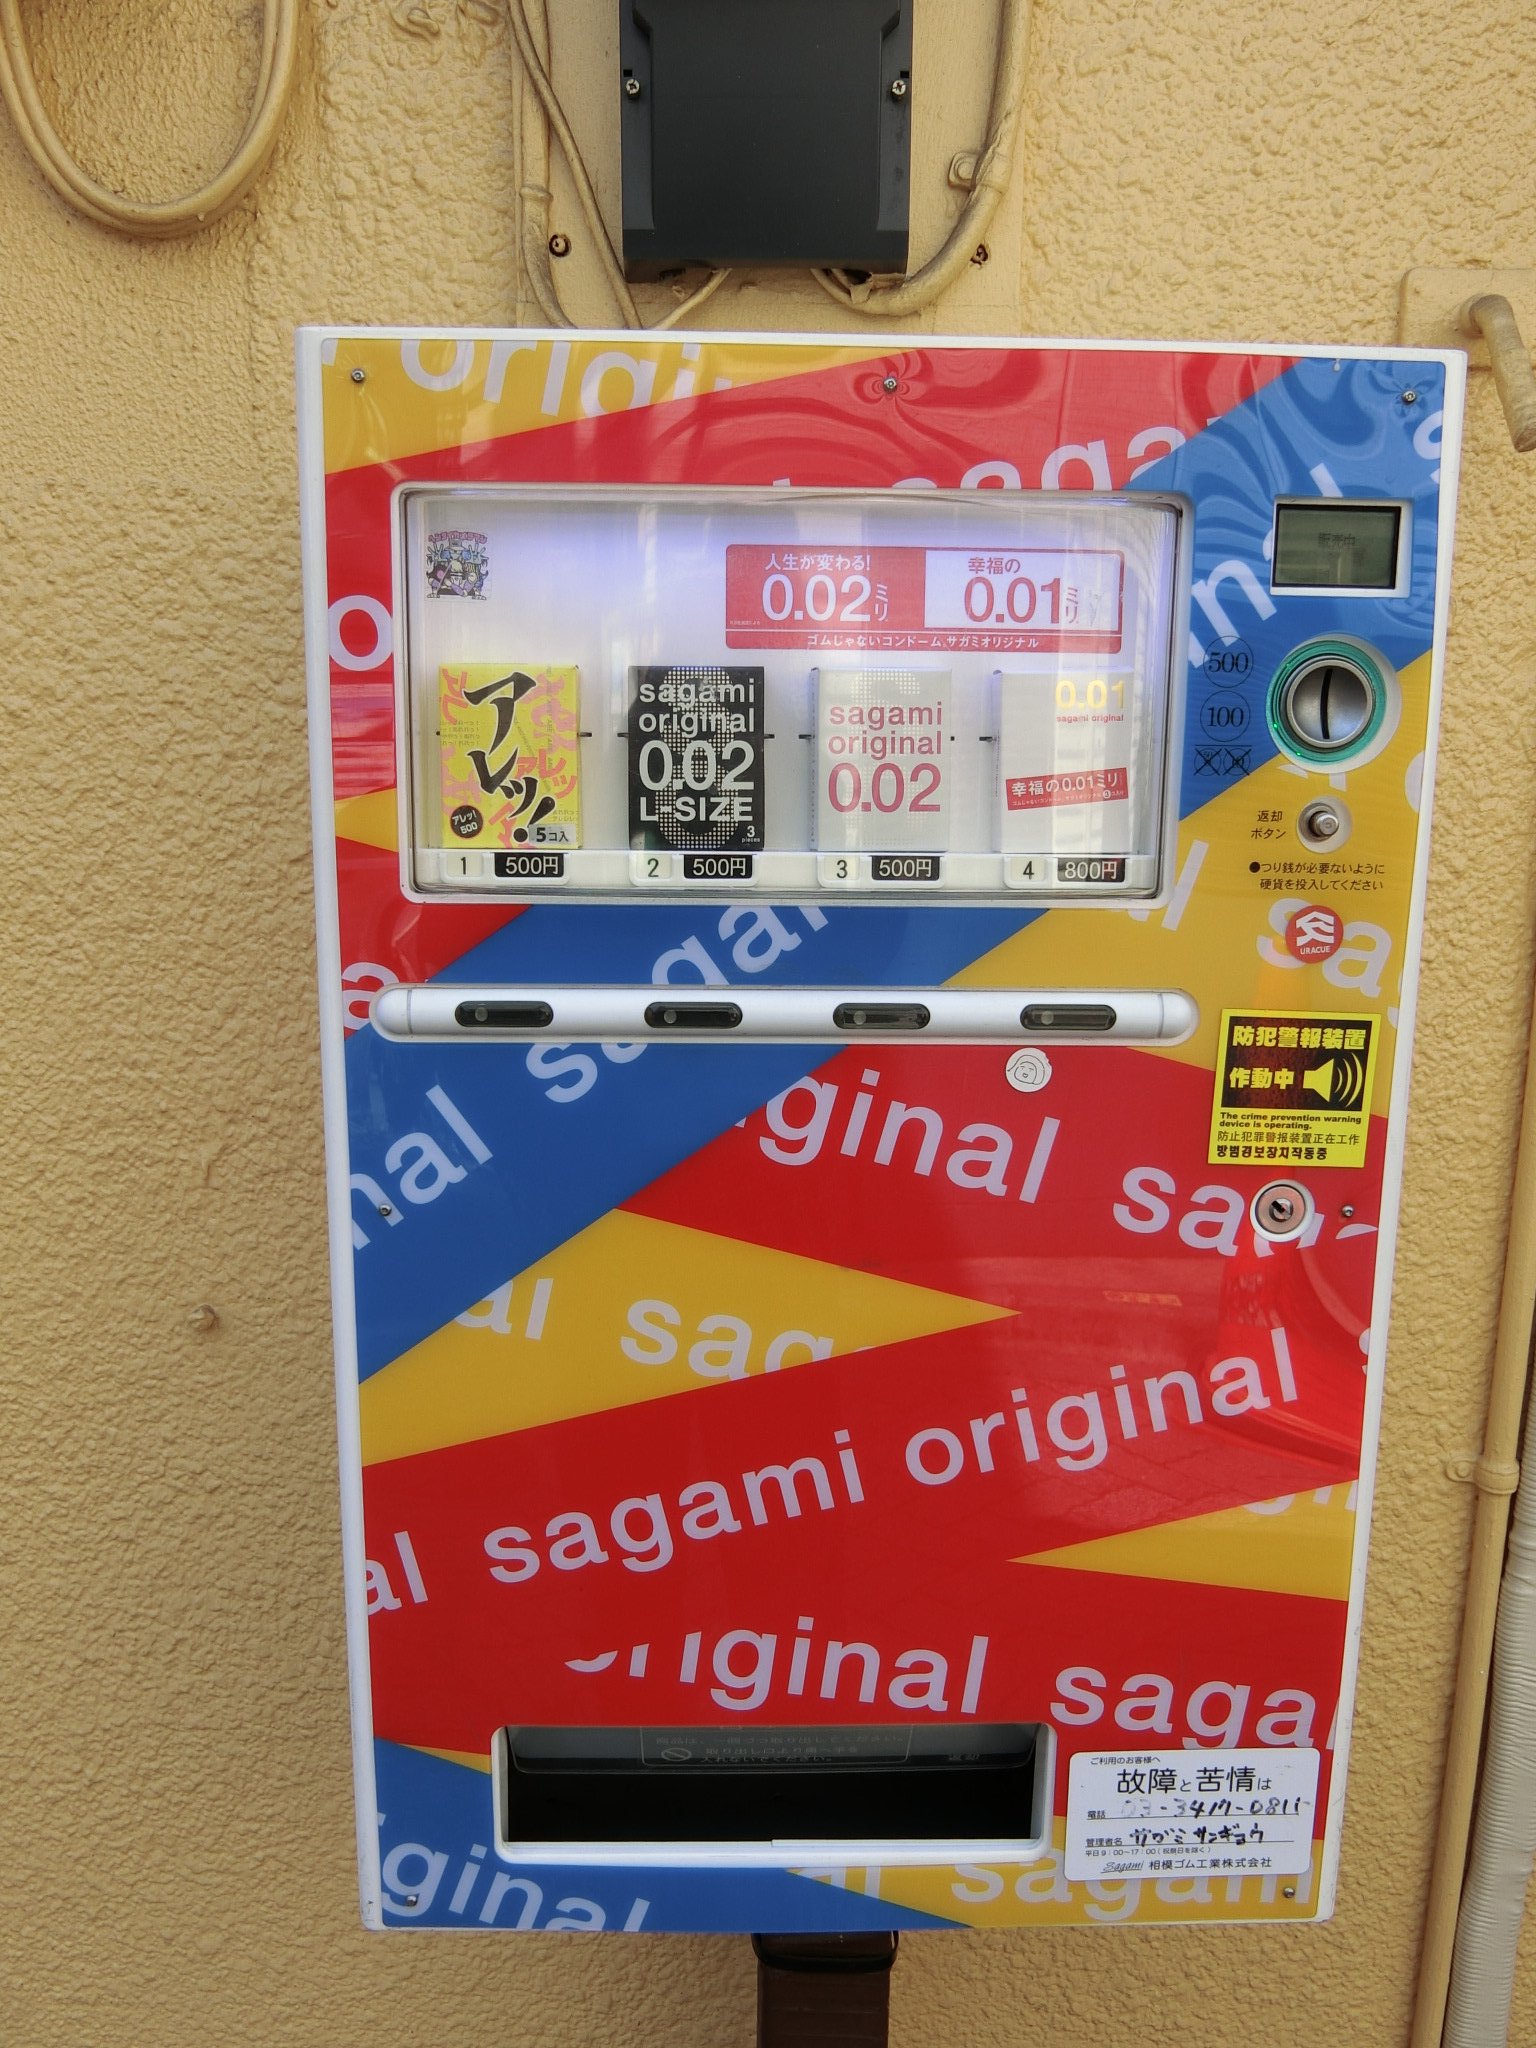 ウーハ店長 高円寺の路地裏にコンドームの自販機を発見 コンドーム バカ売れ 品薄という記事を読んだが この自販機は売り切れにはなっていないようだ T Co Aqbz4epq3y Twitter